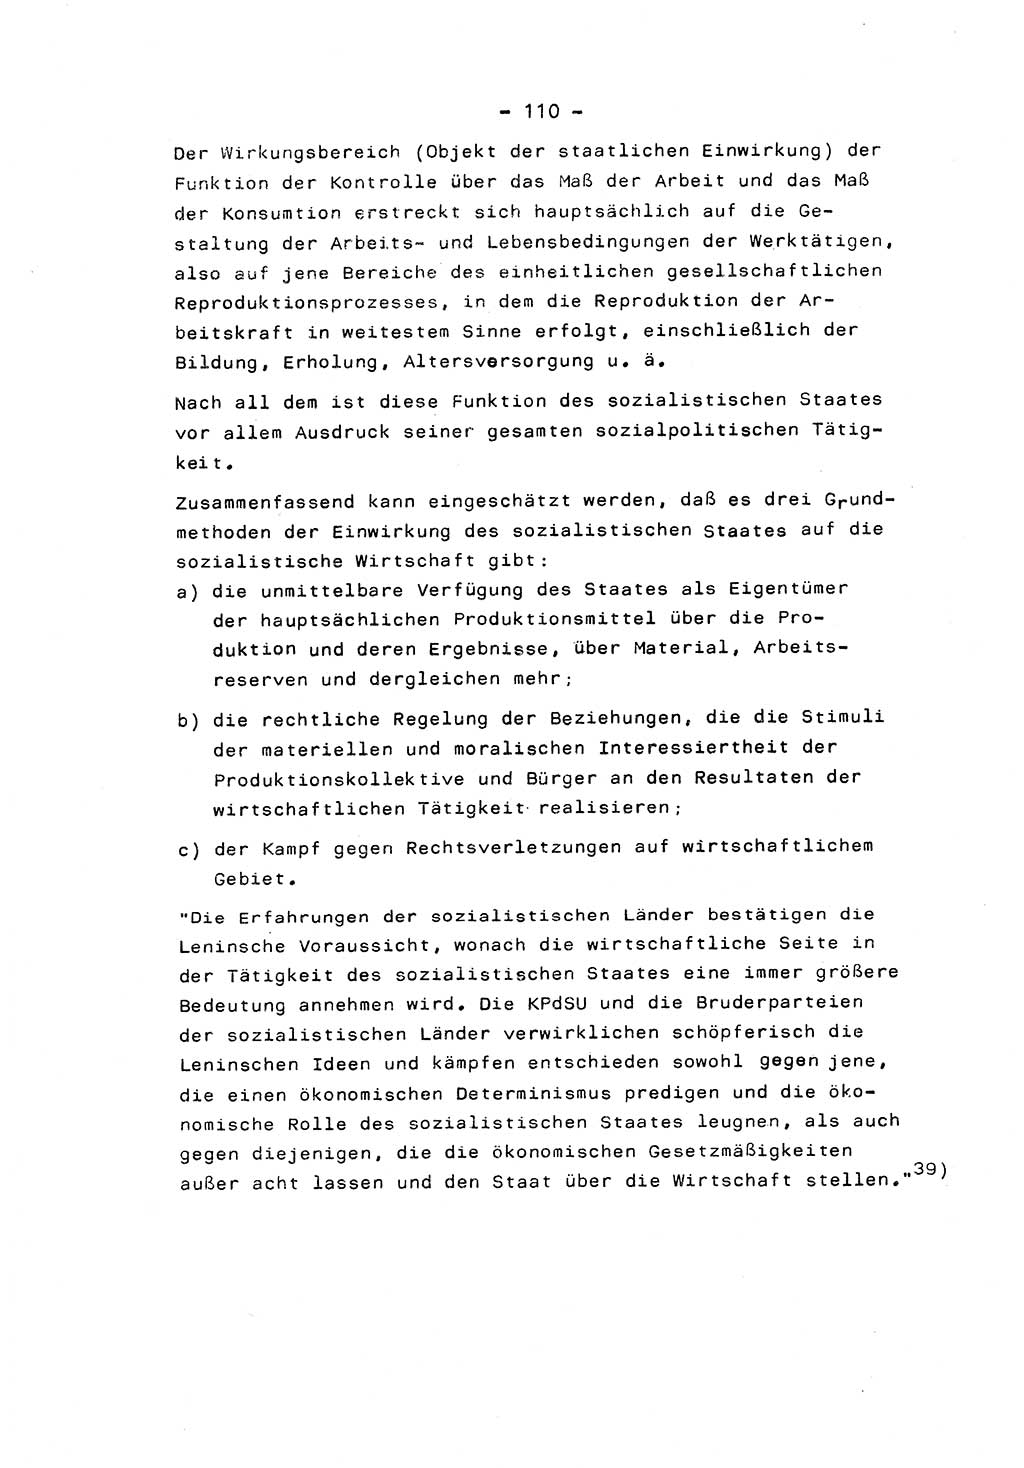 Marxistisch-leninistische Staats- und Rechtstheorie [Deutsche Demokratische Republik (DDR)] 1975, Seite 110 (ML St.-R.-Th. DDR 1975, S. 110)